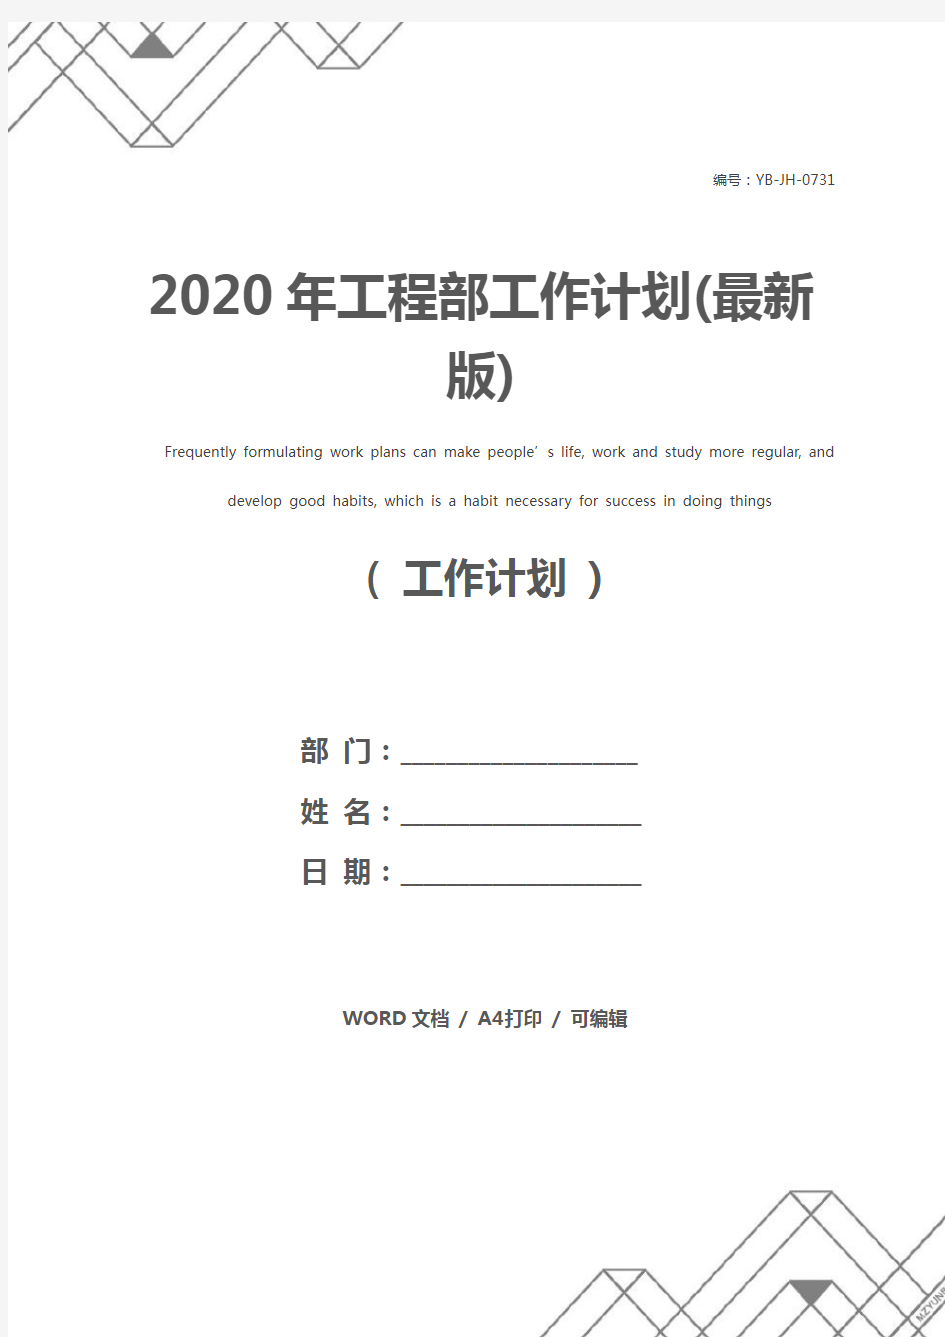 2020年工程部工作计划(最新版)